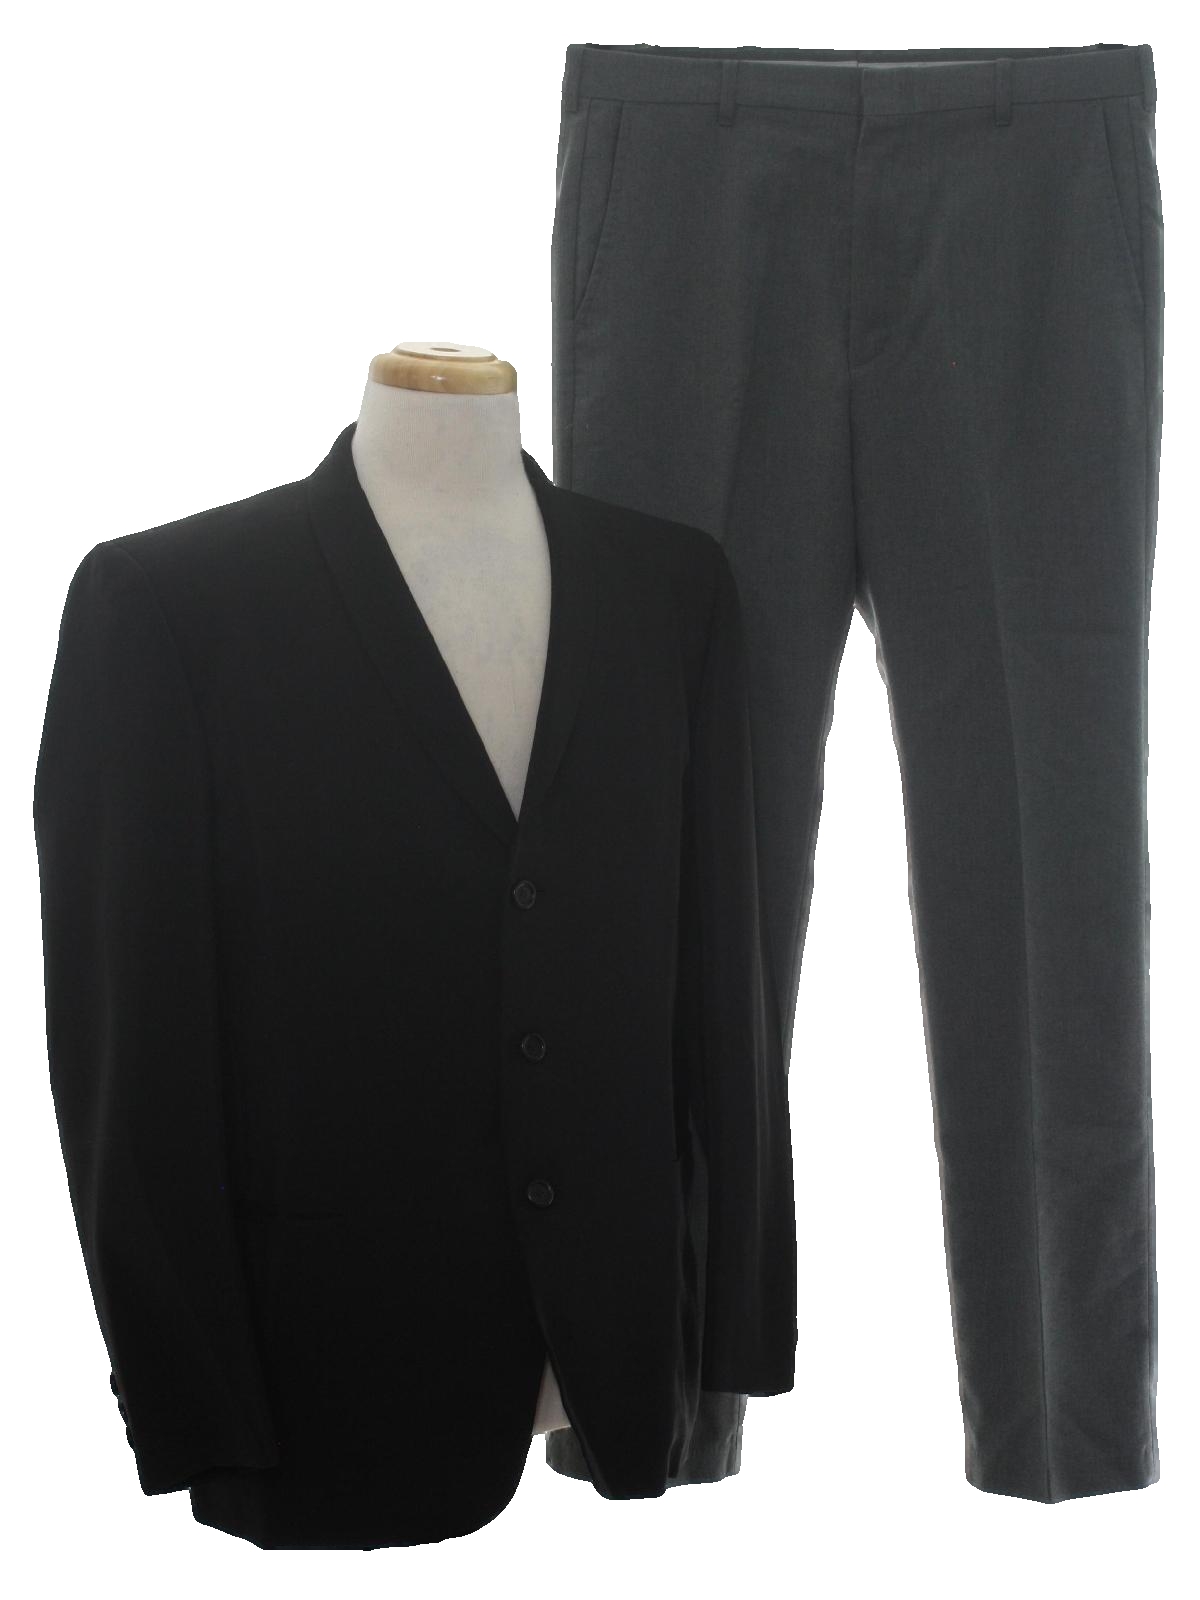 Download Sixties Vintage Suit: 60s -Eagle Clothes- Mens two piece ...